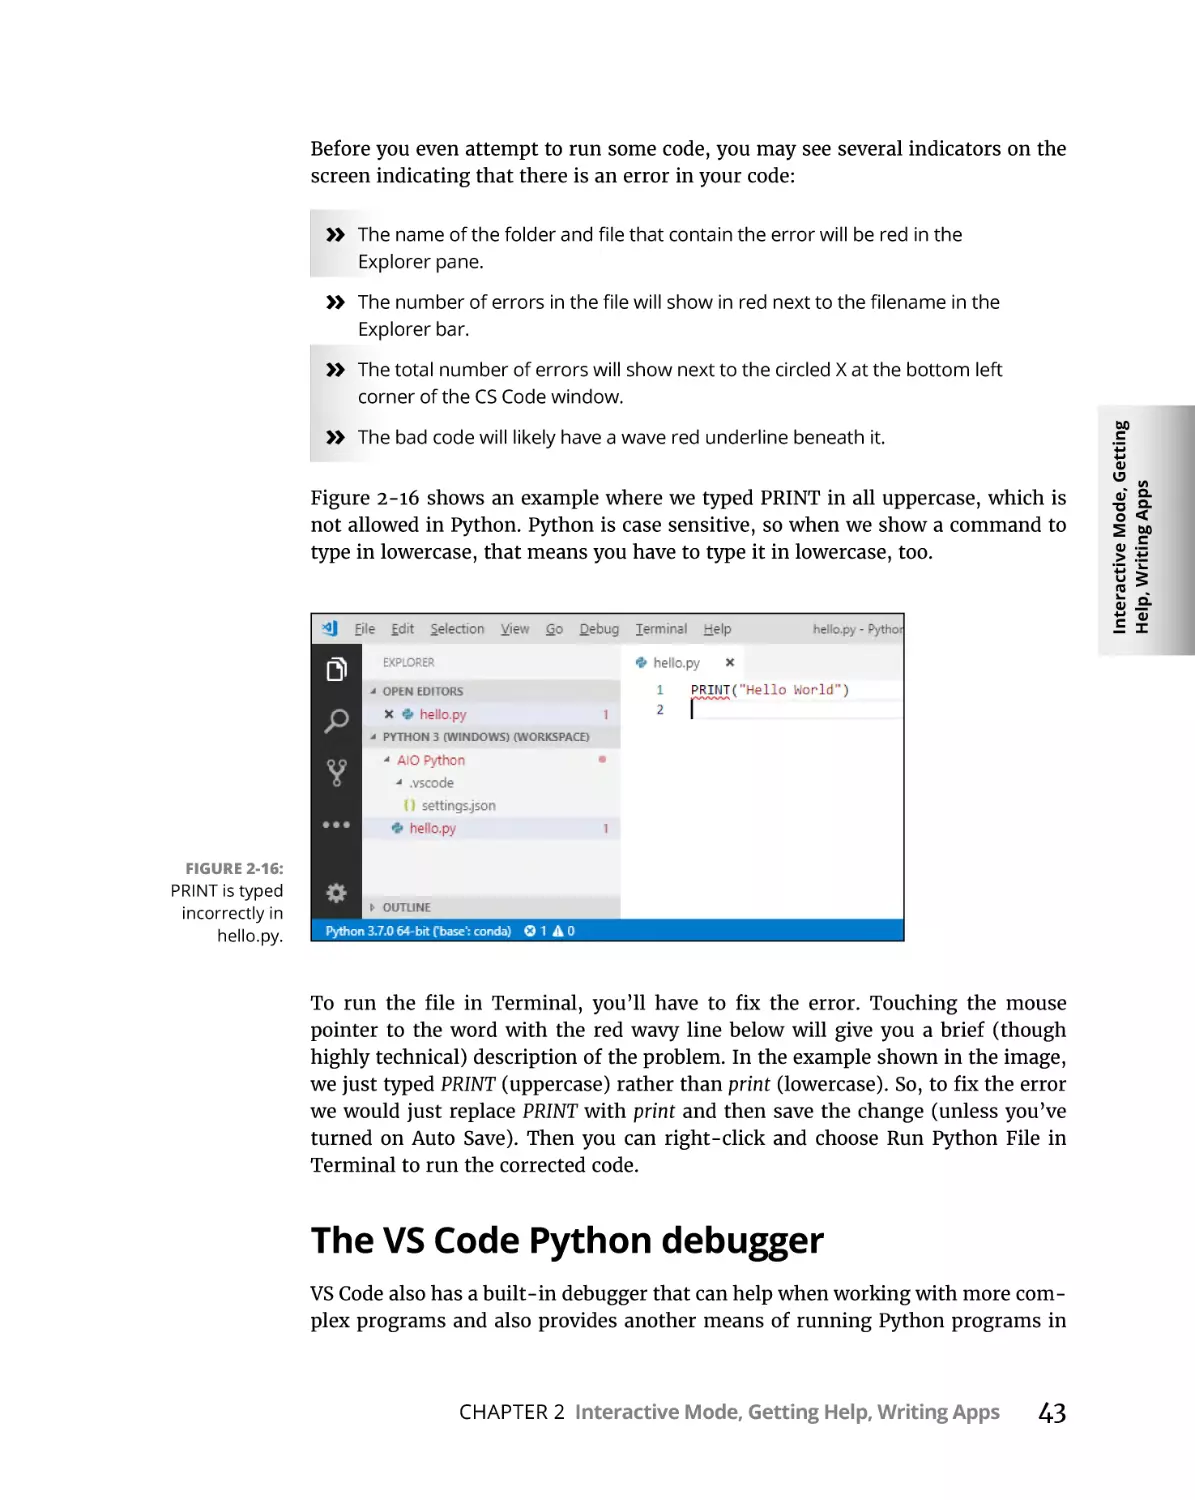 The VS Code Python debugger